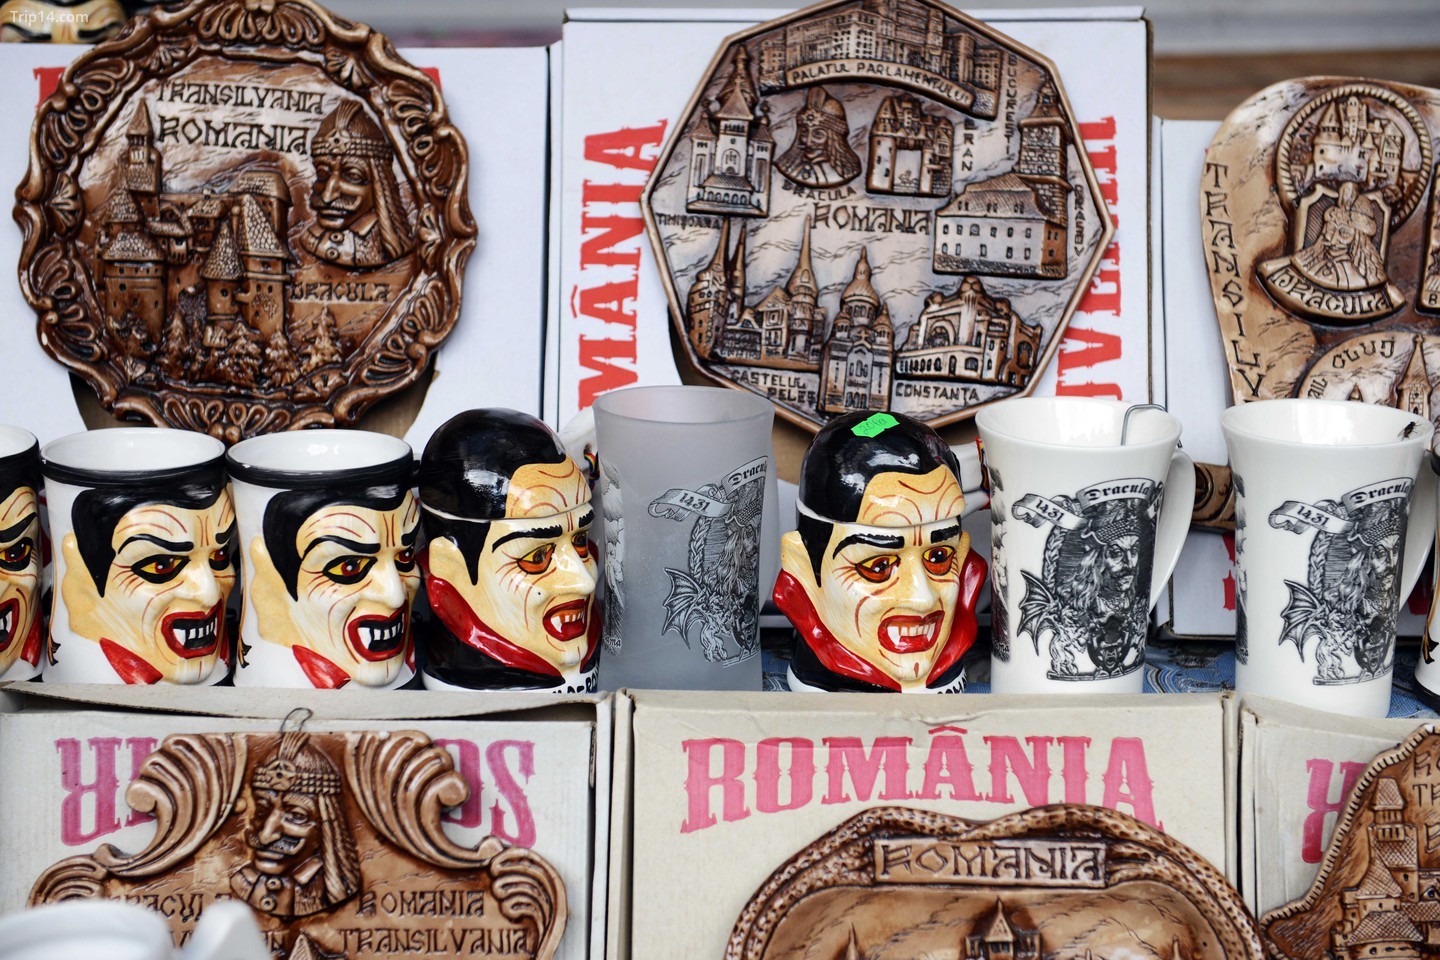  Đồ lưu niệm Dracula bán tại lâu đài Bran ở Romania   |   